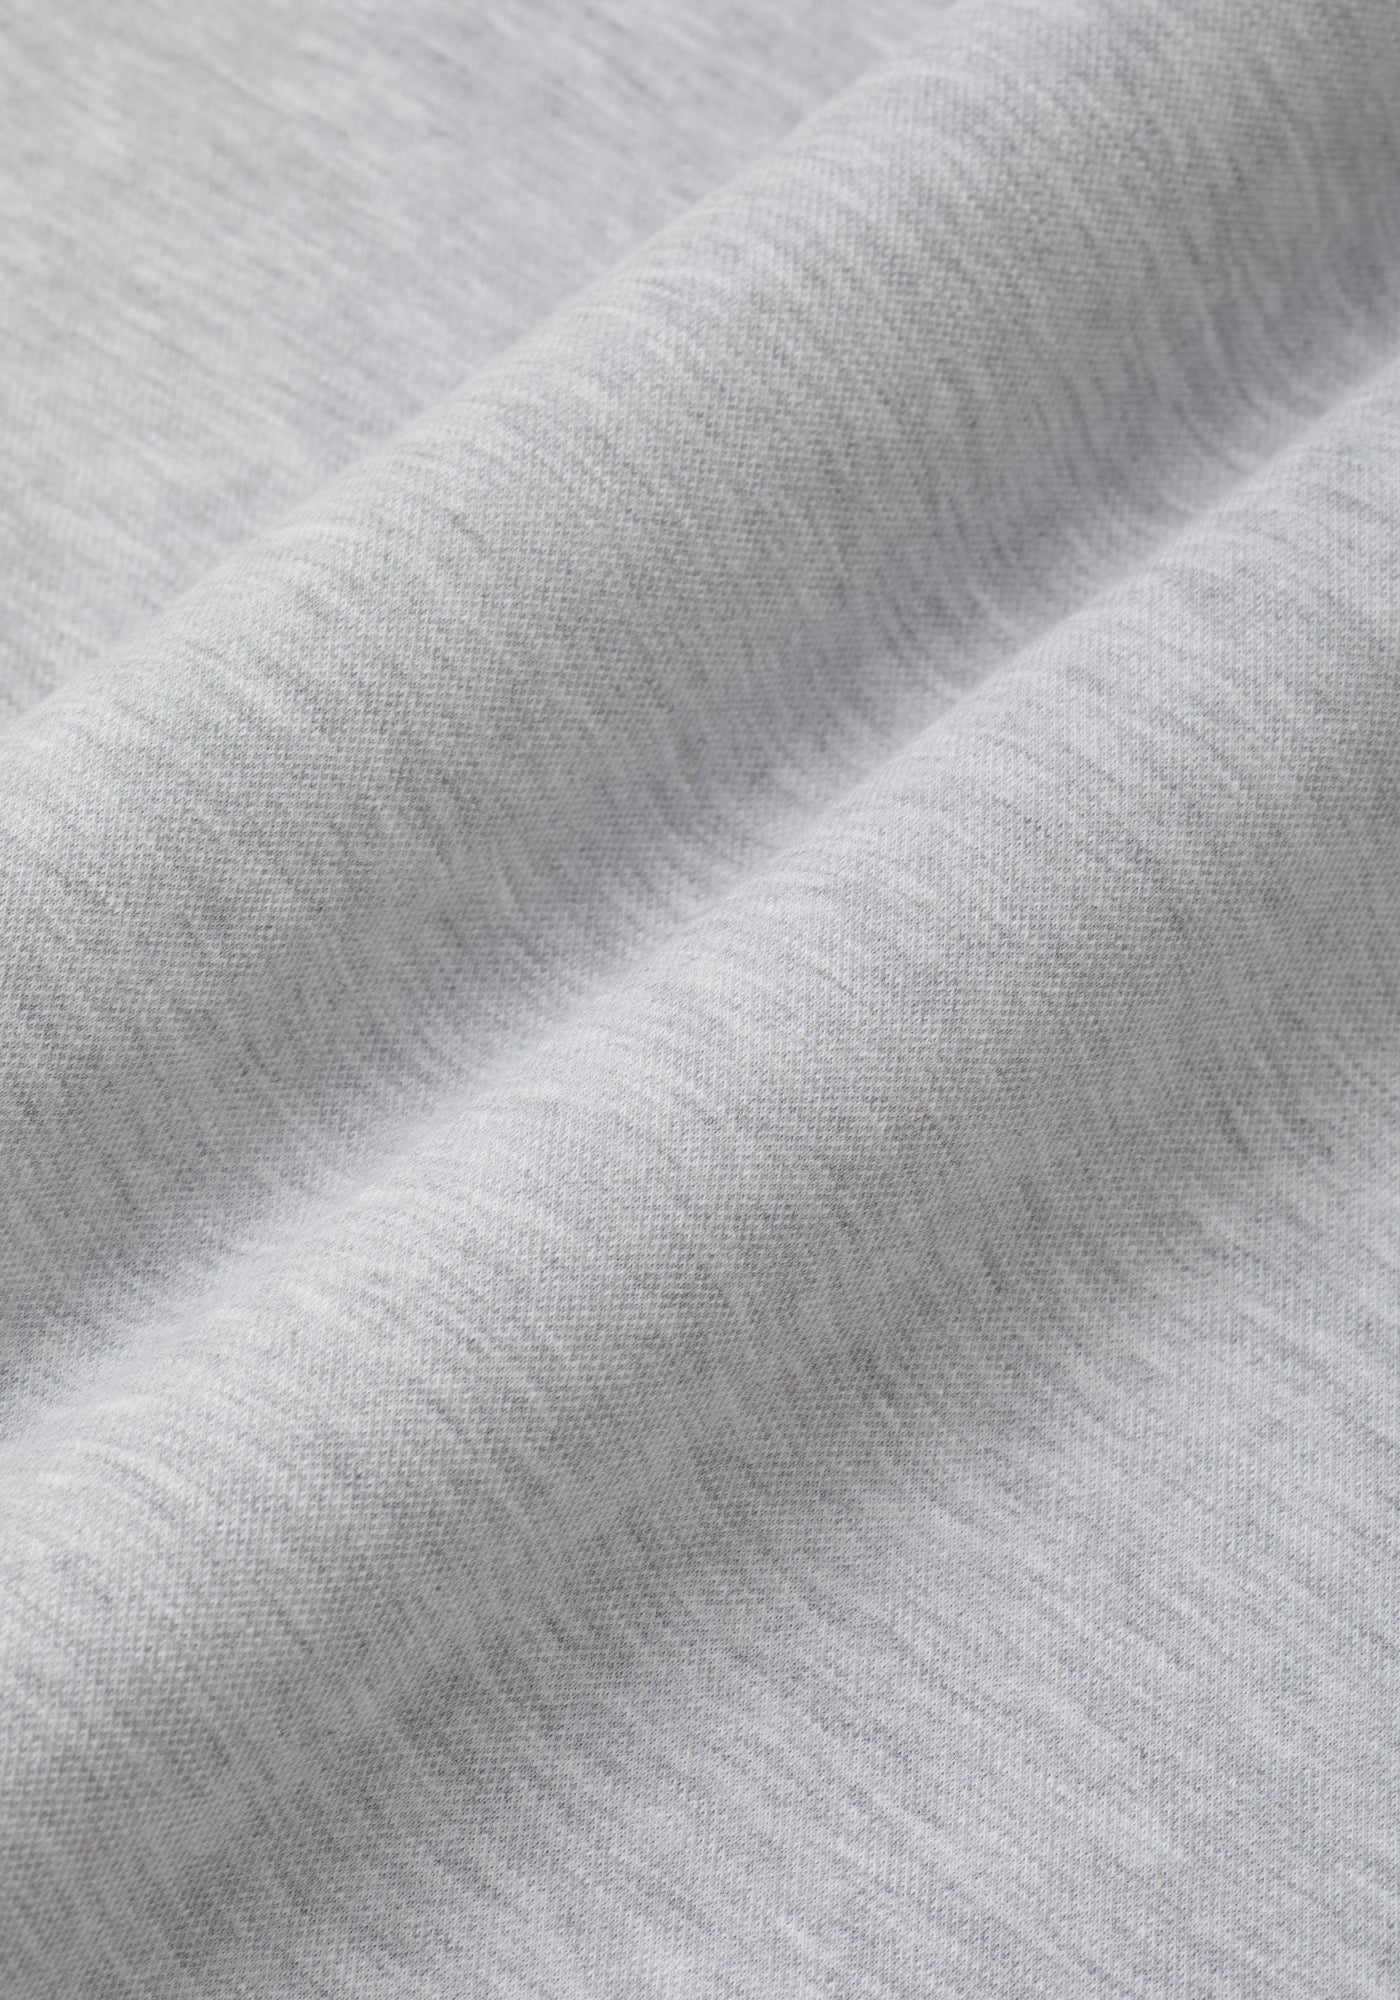 Smoke Grey Cotton Polo Shirt